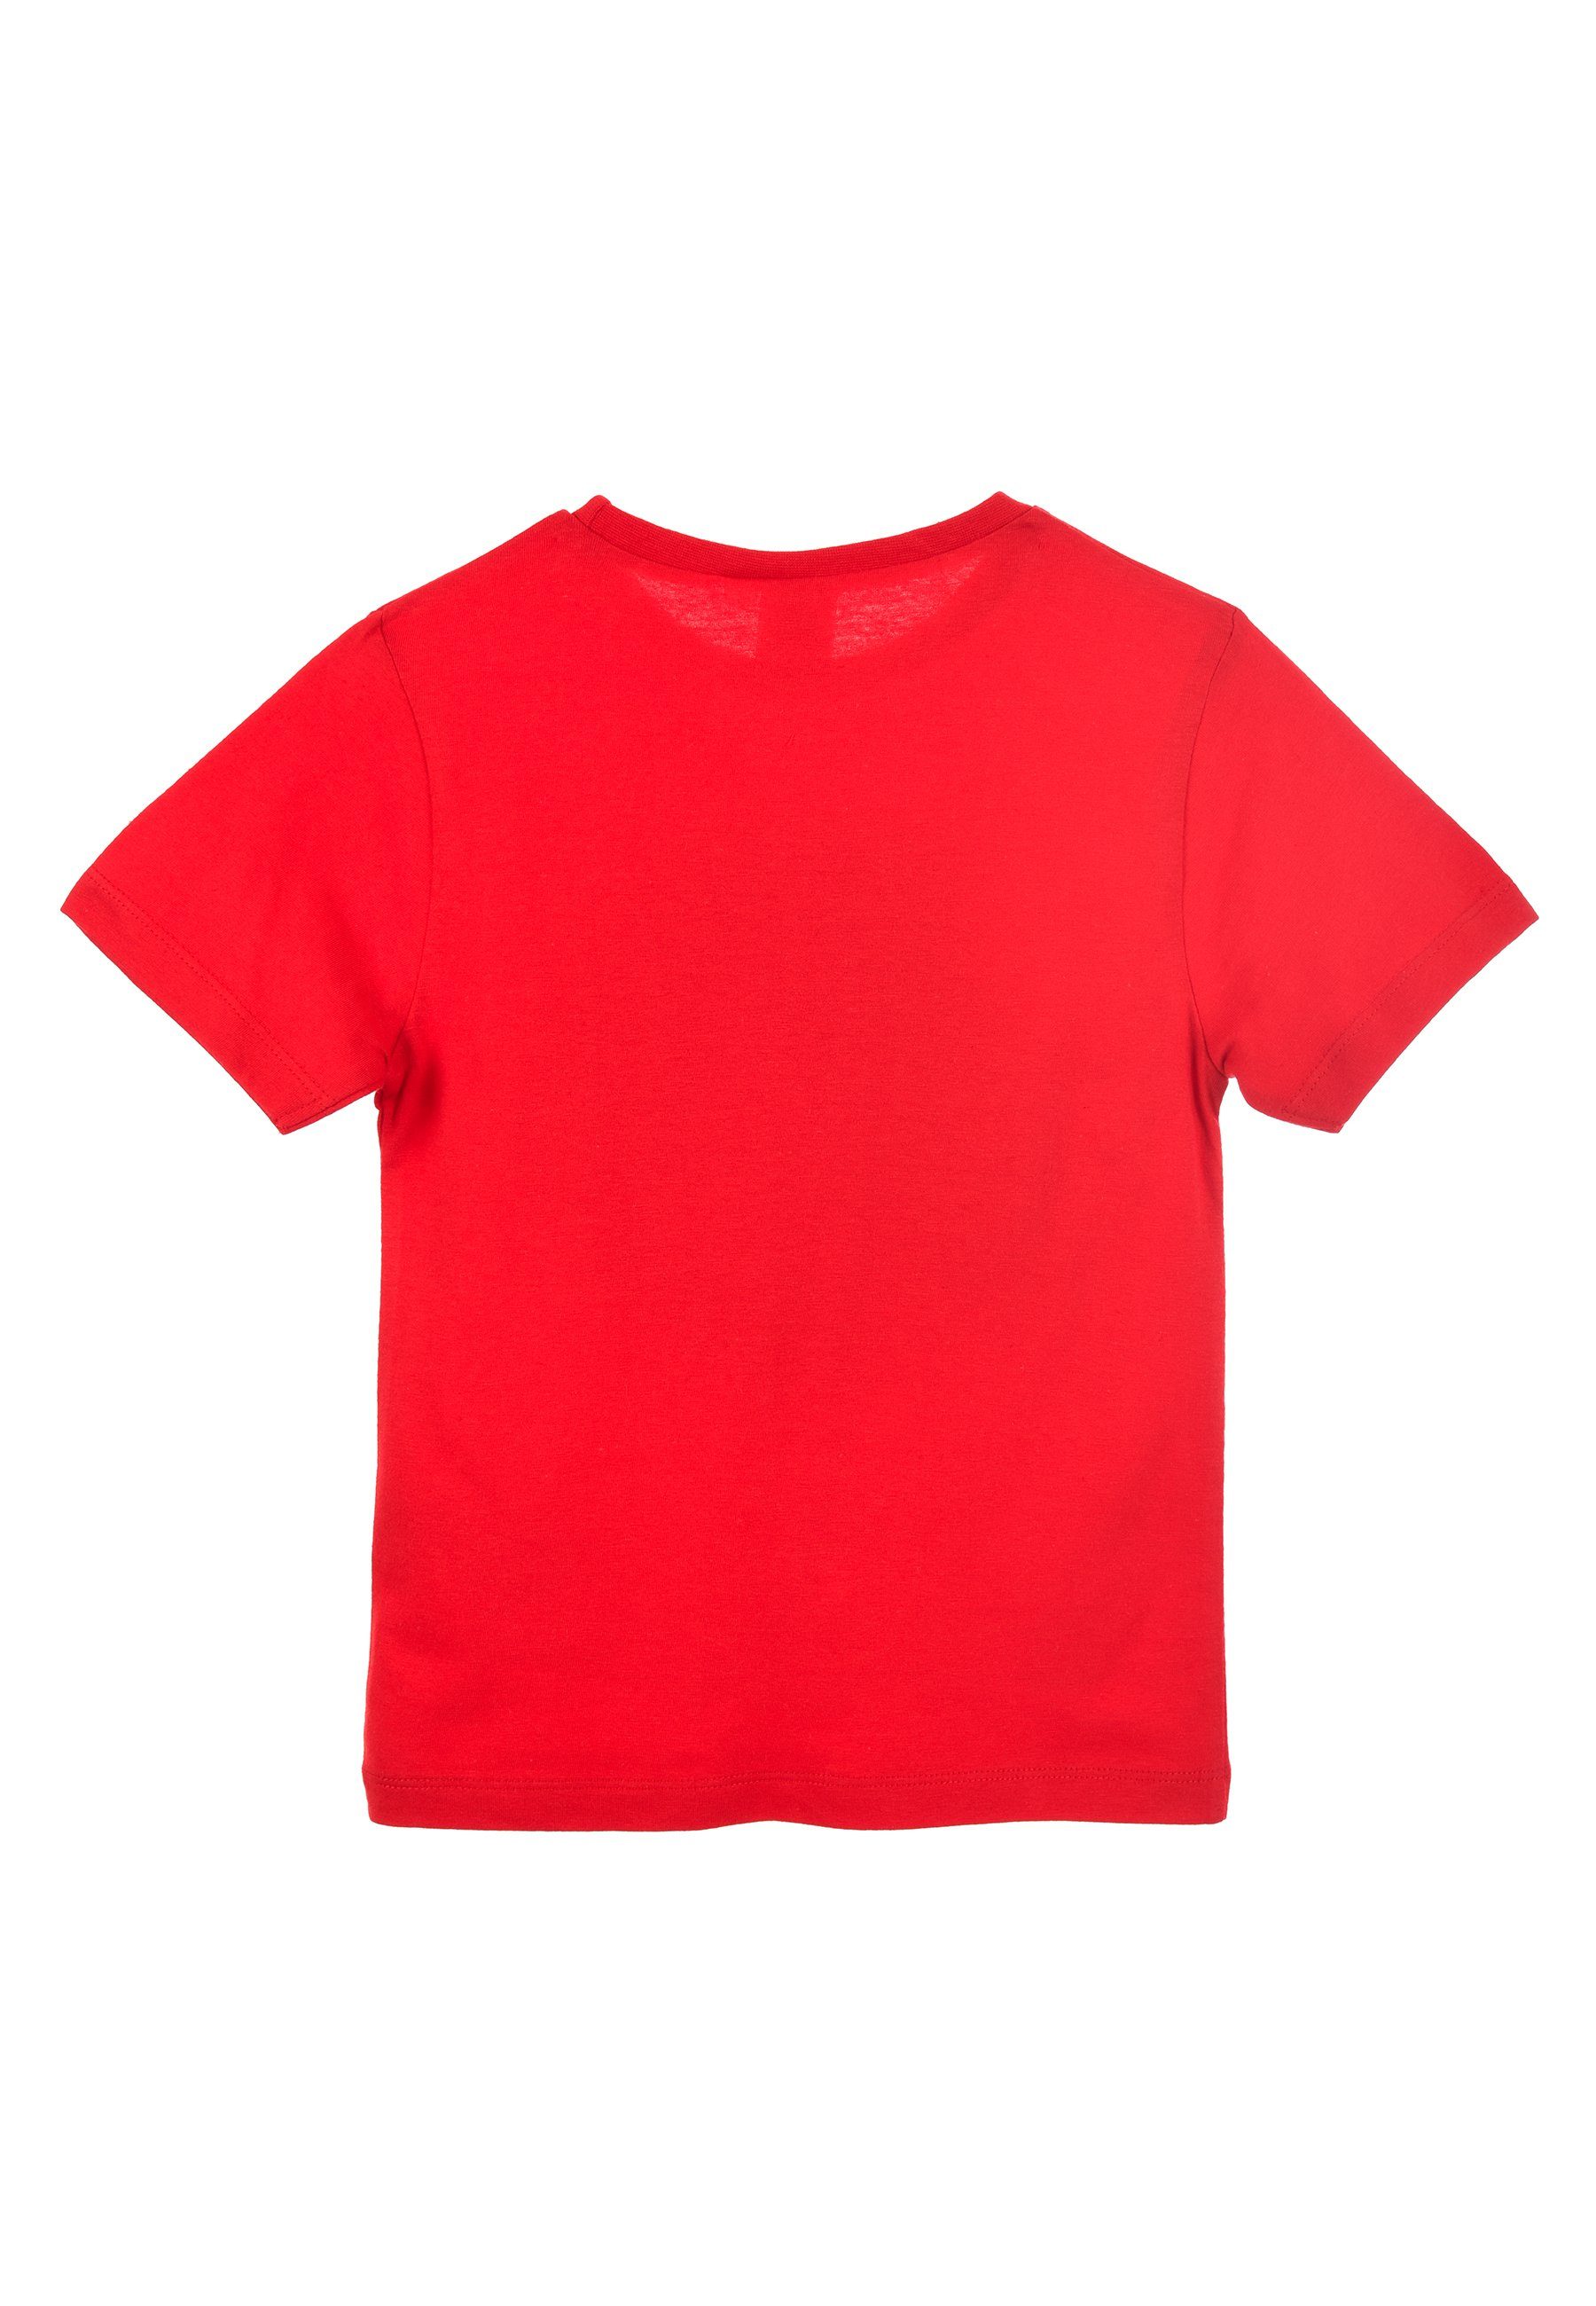 Kinder T-Shirt Jungen Disney Mouse T-Shirt Kurzarm-Shirt Mickey Rot